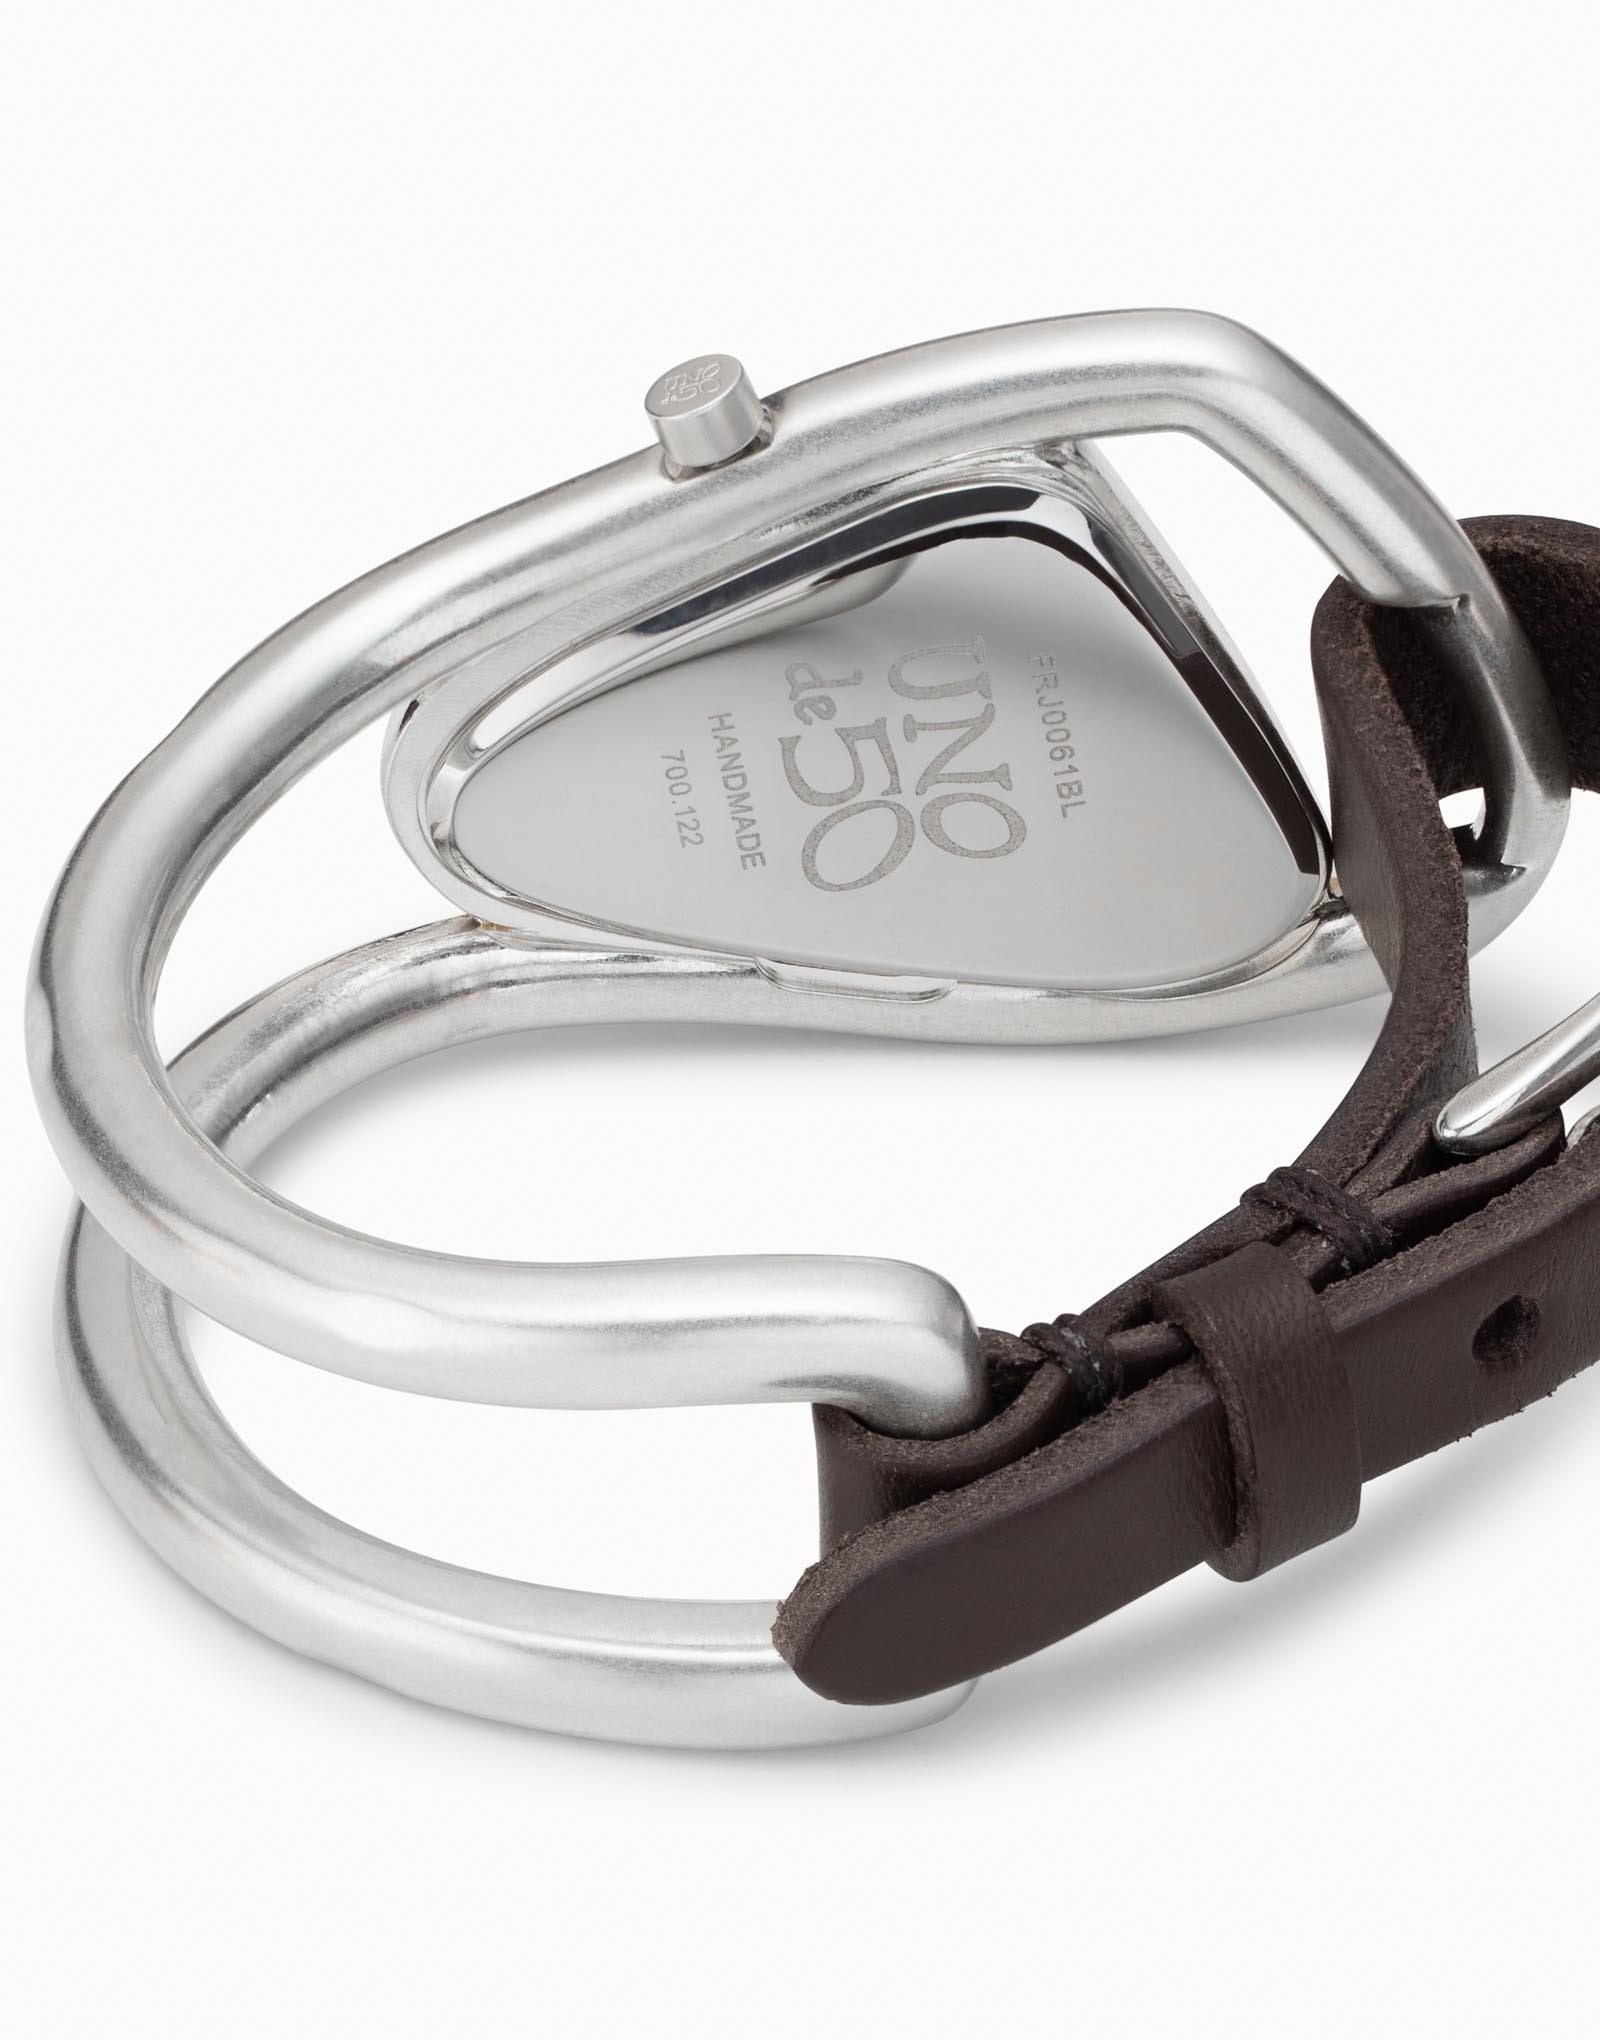 Montre femme Uno de 50 en métal plaquée argent avec bracelet convertible, Argent, large image number null